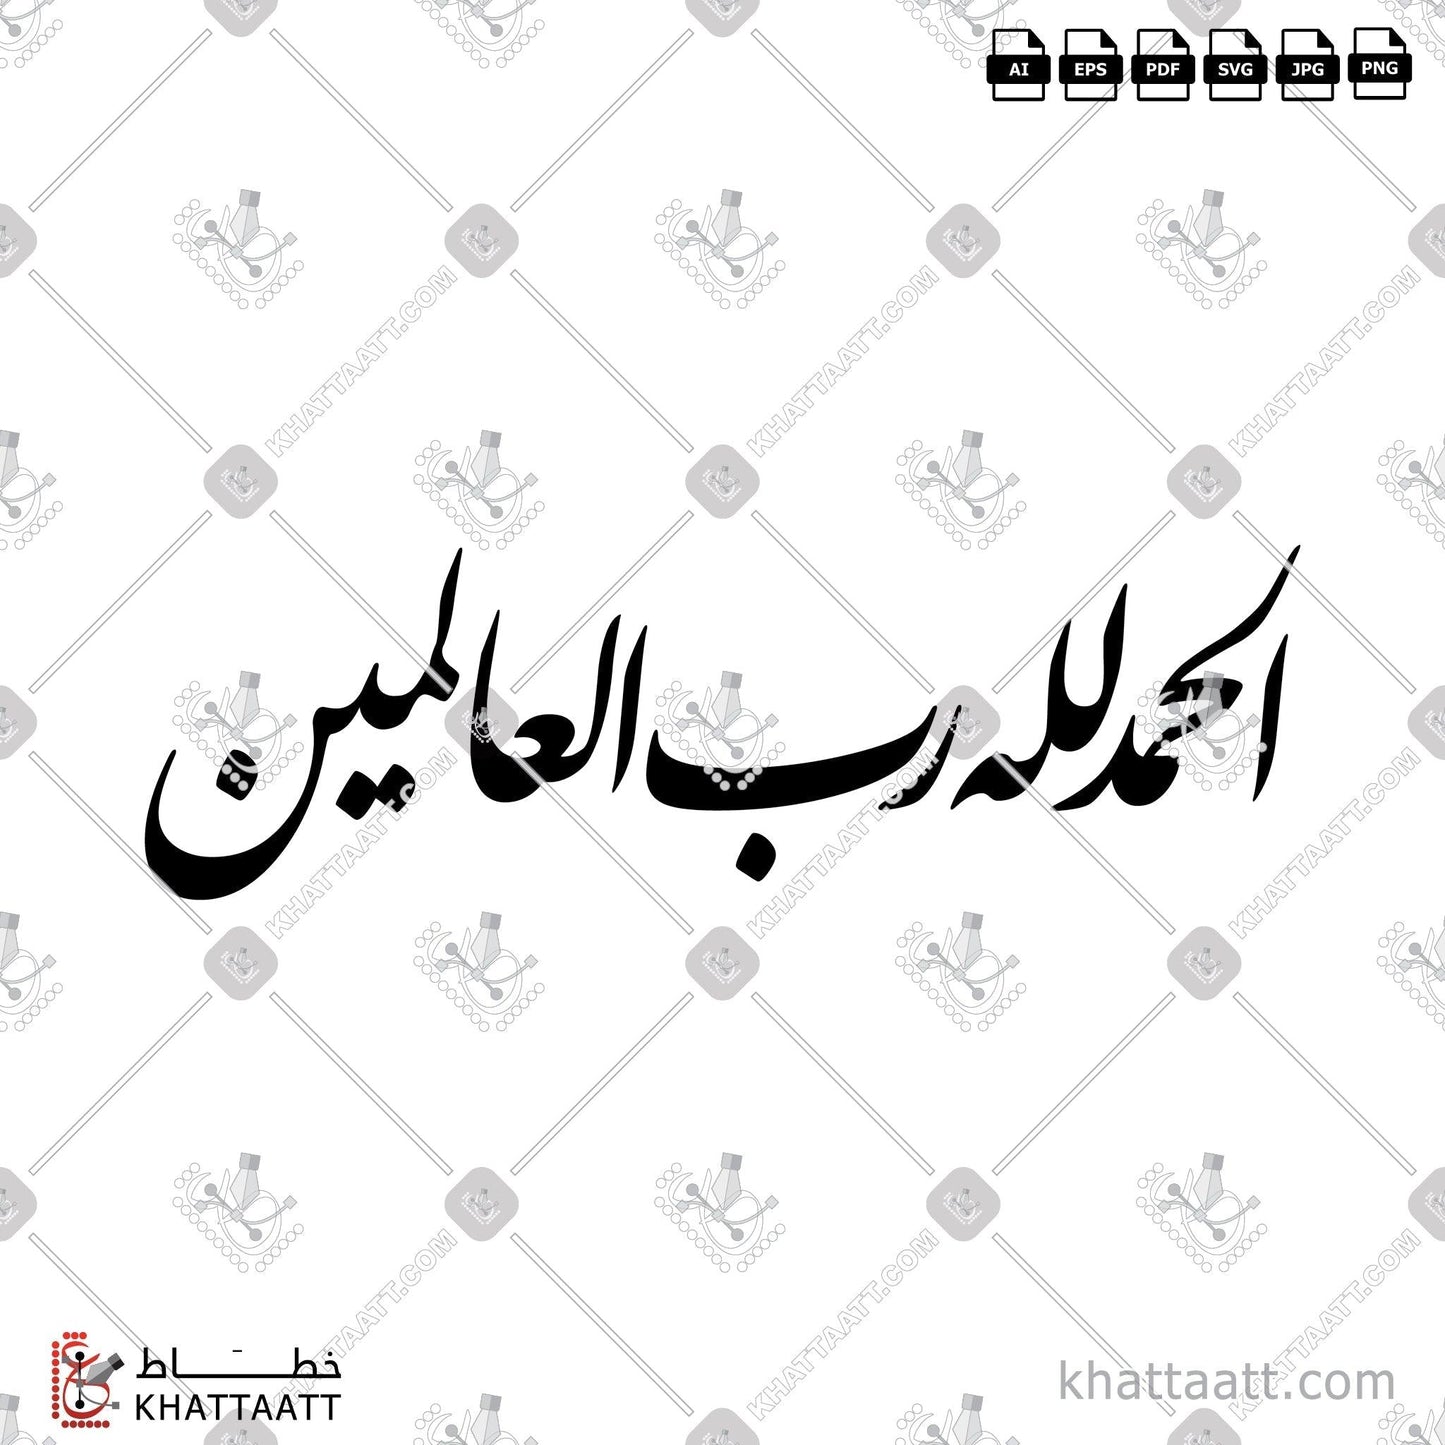 Digital Arabic calligraphy vector of الحمد لله رب العالمين in Farsi - الخط الفارسي